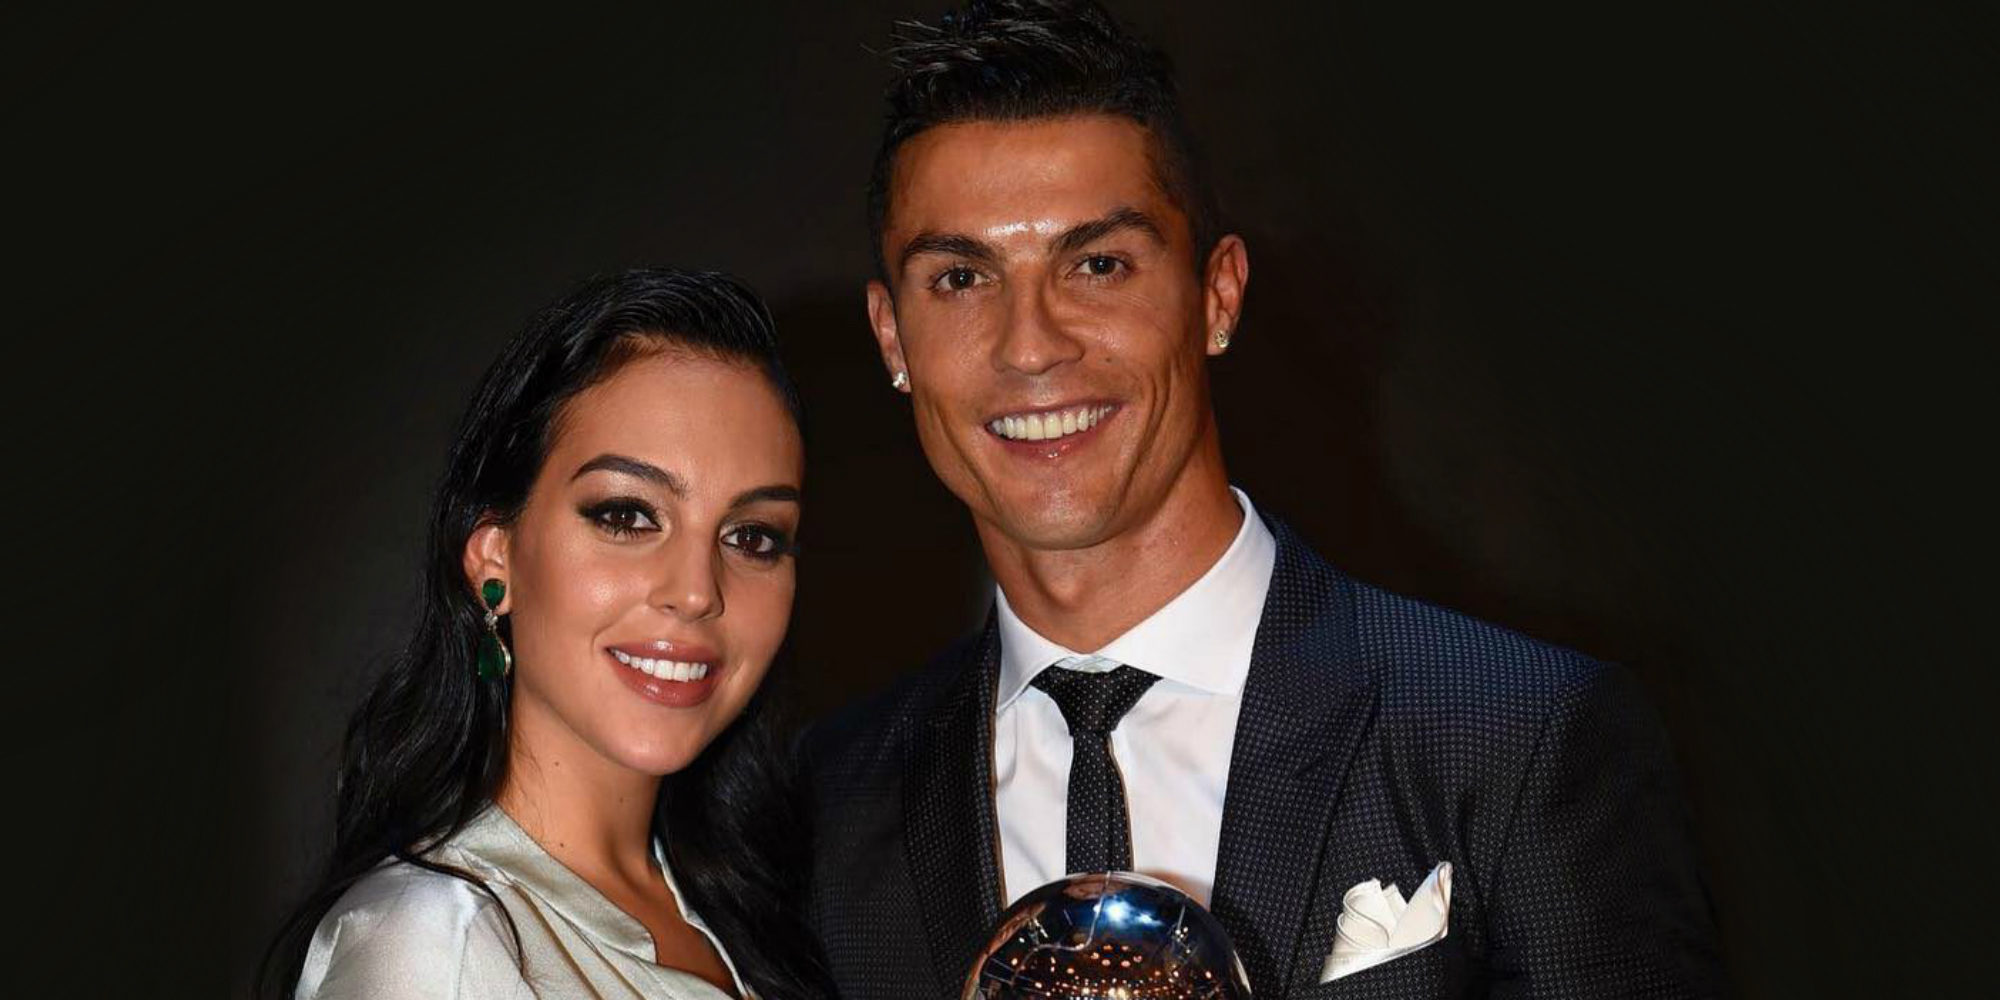 Cristiano Ronaldo y Georgina Rodríguez, padres de su primera hija en común: "¡Alana Martina acaba de nacer!"